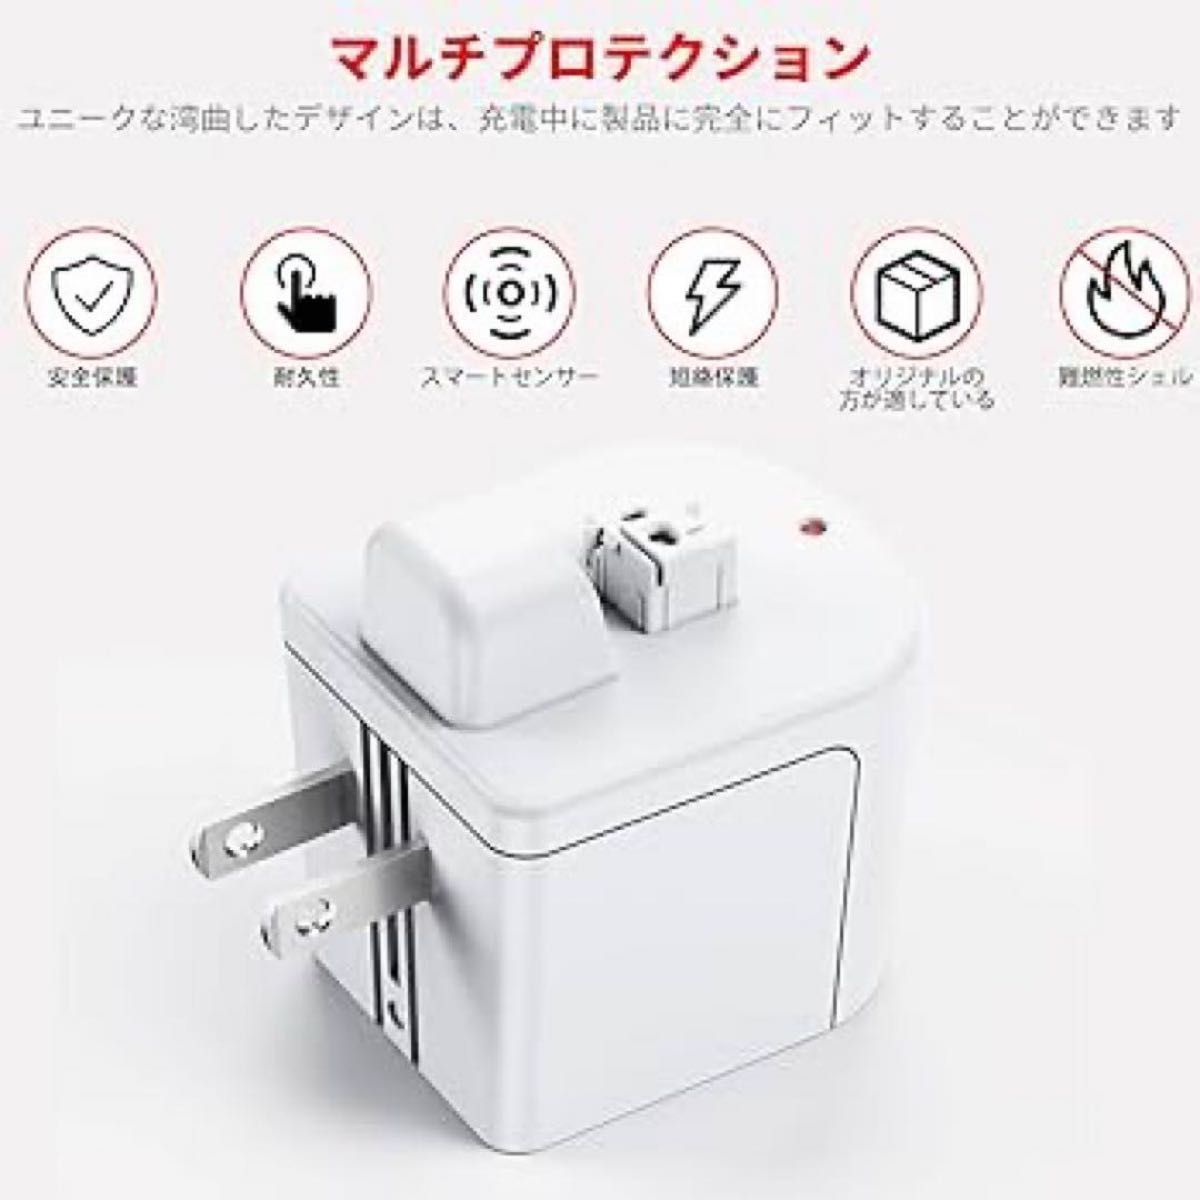 【即購入OK】シェーバー充電アダプター 女性用 シェーバー 充電 充電器 コンセント 